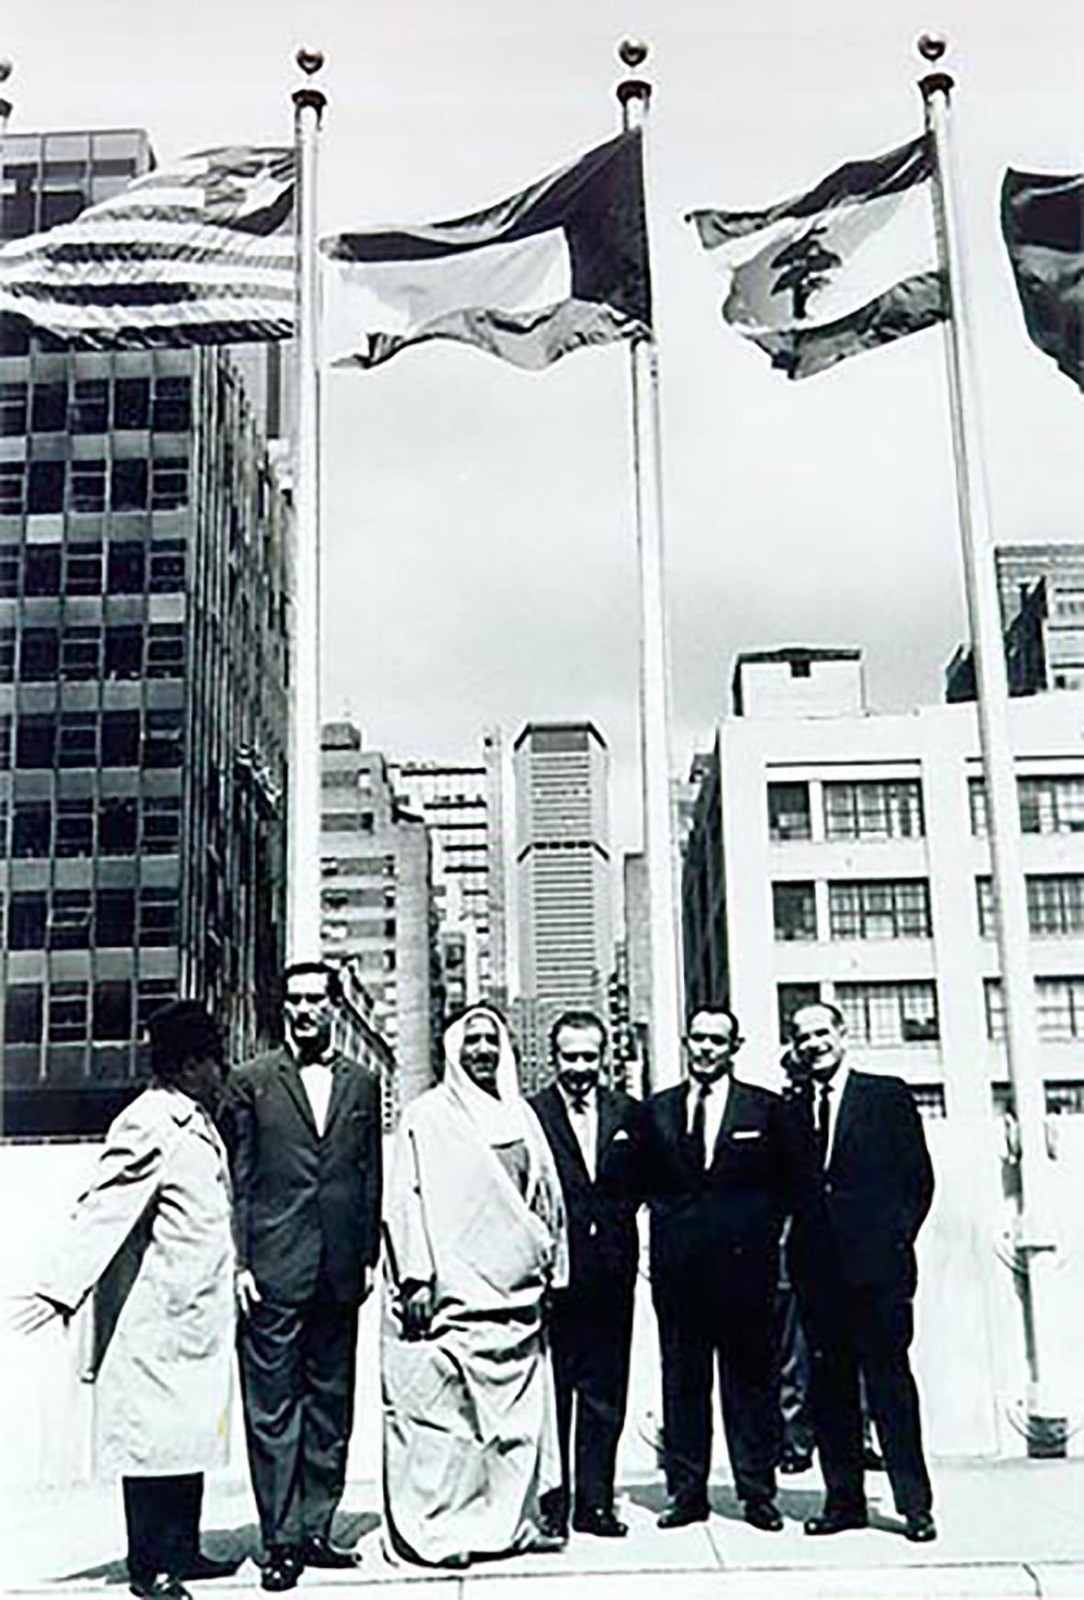 الشيخ صباح عندما تم رفع علم دولة الكويت لأوّل مرة أمام مبنى منظمة الأمم المتحدة في نيويورك في العام 1963.